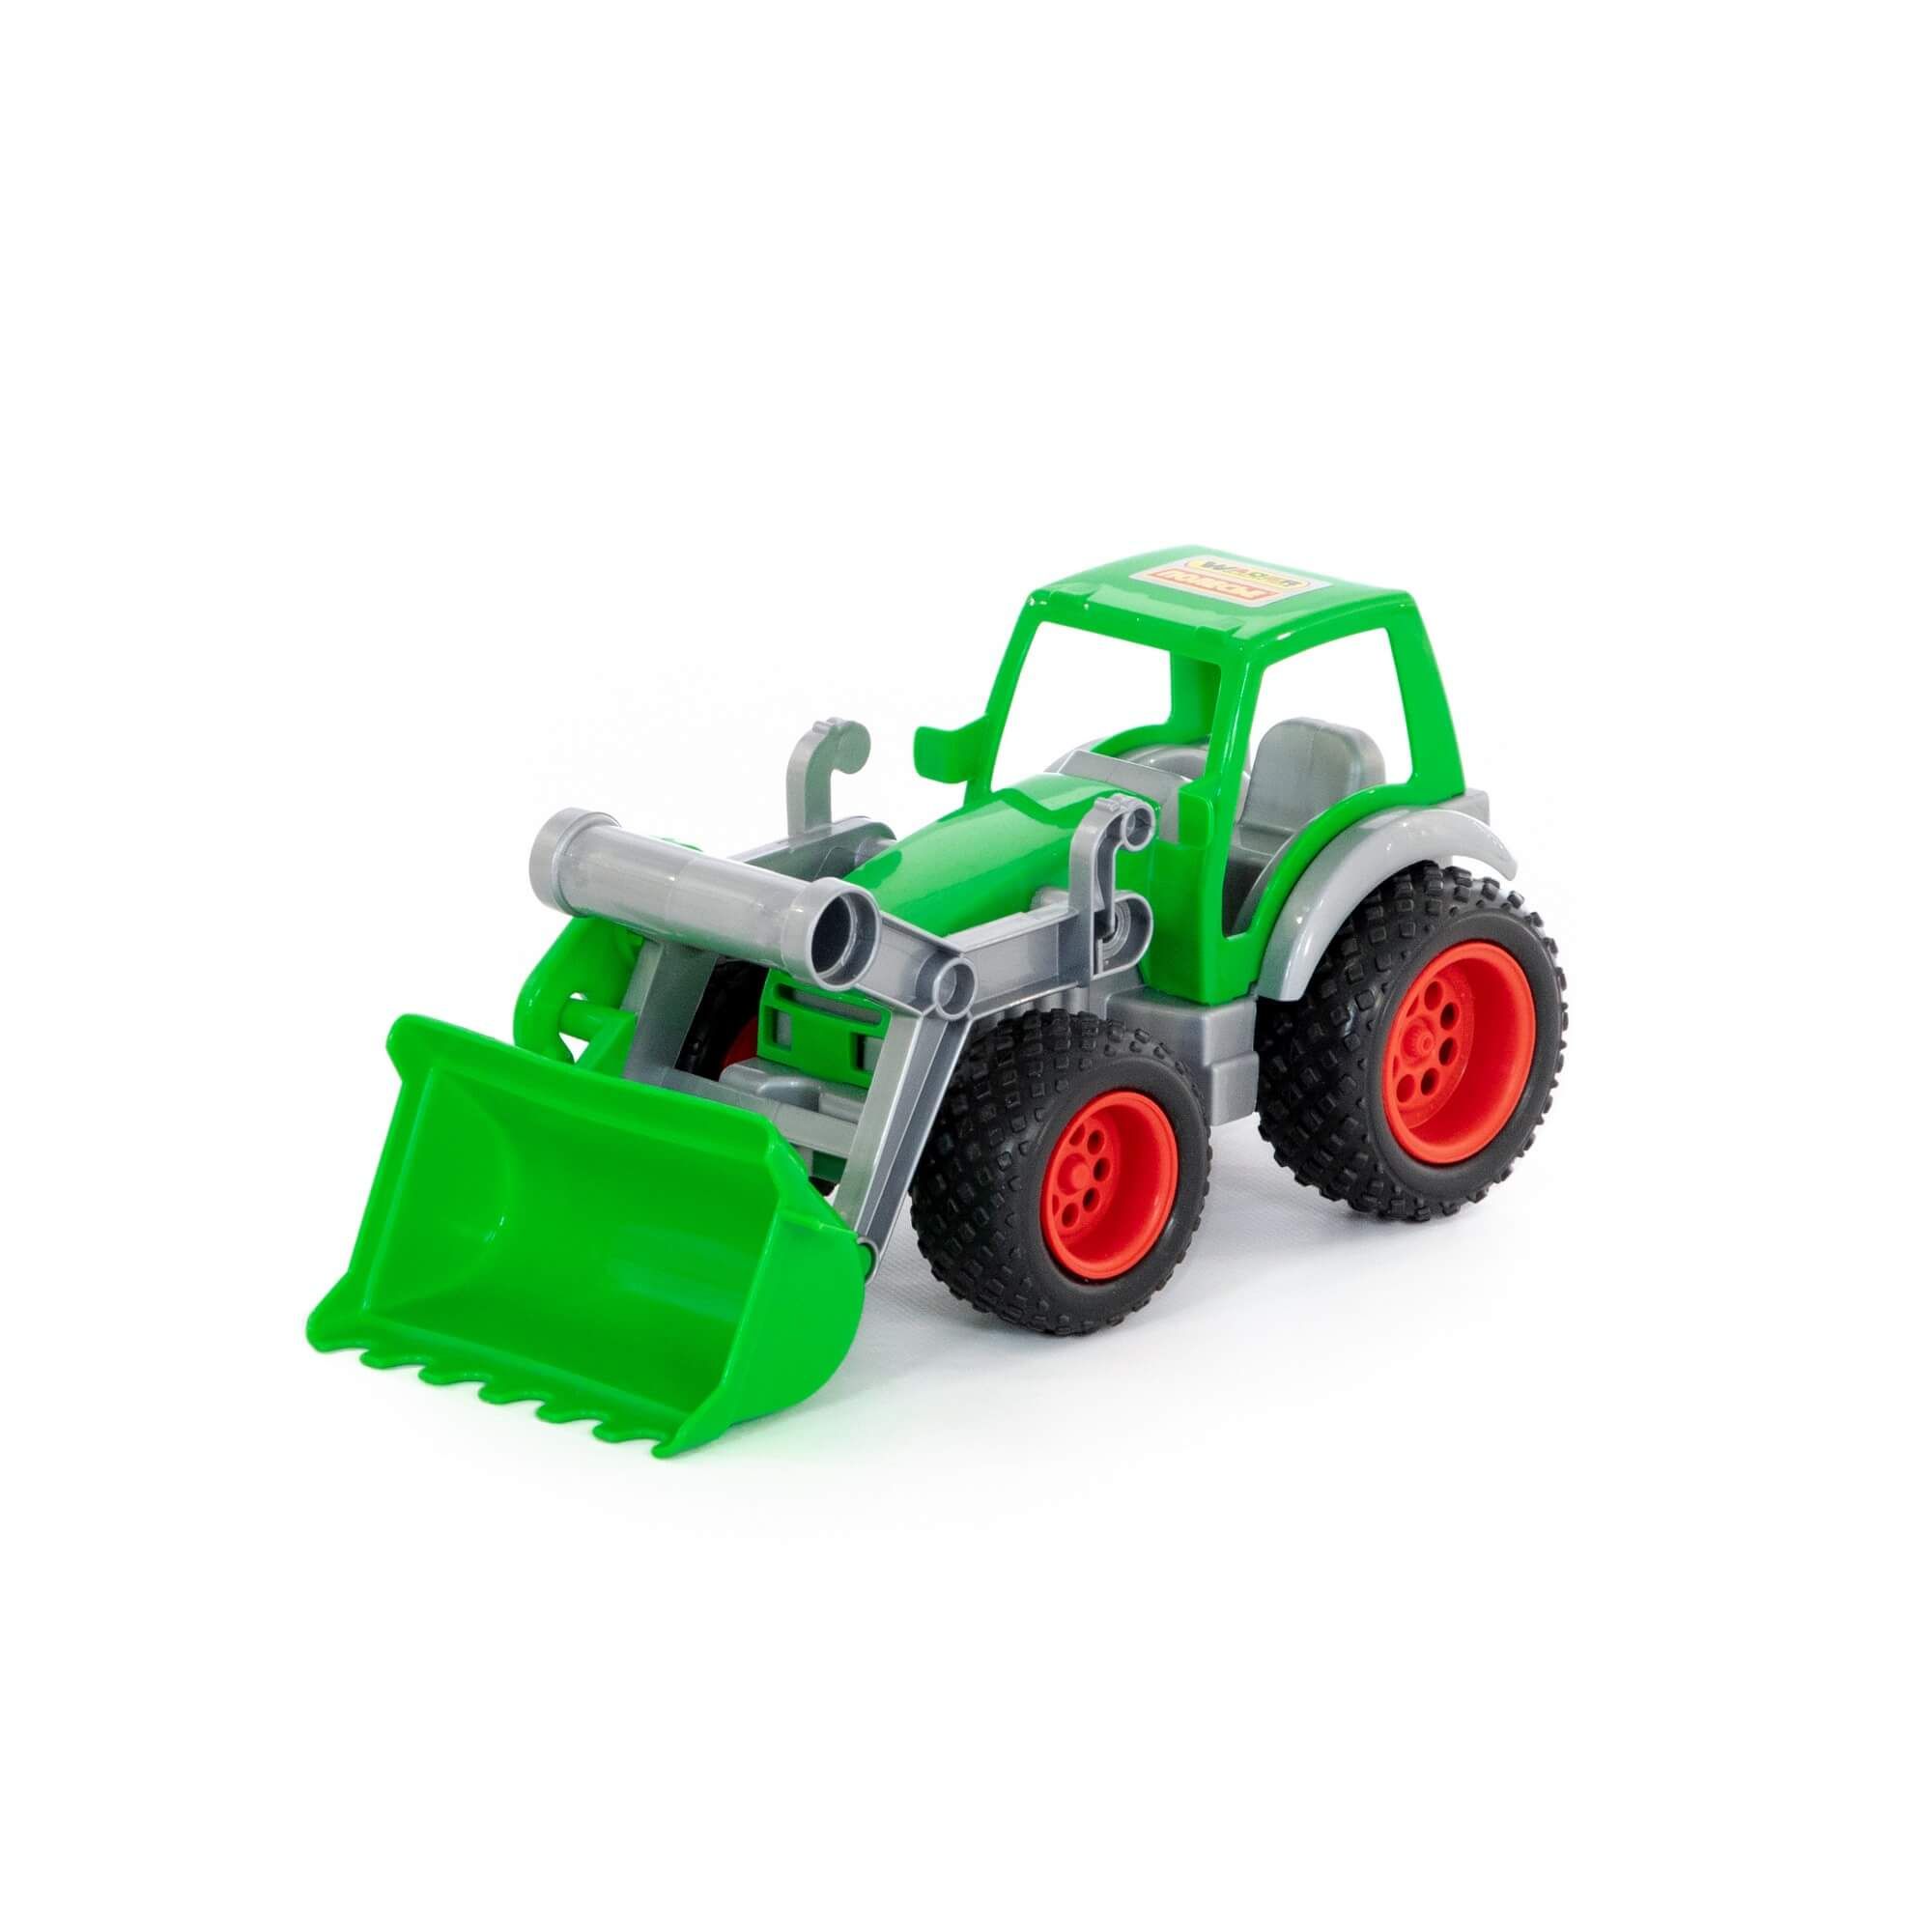 Трактор-погрузчик Фермер-техник (в сеточке) 8848 конструктор техник экскаватор погрузчик трактор